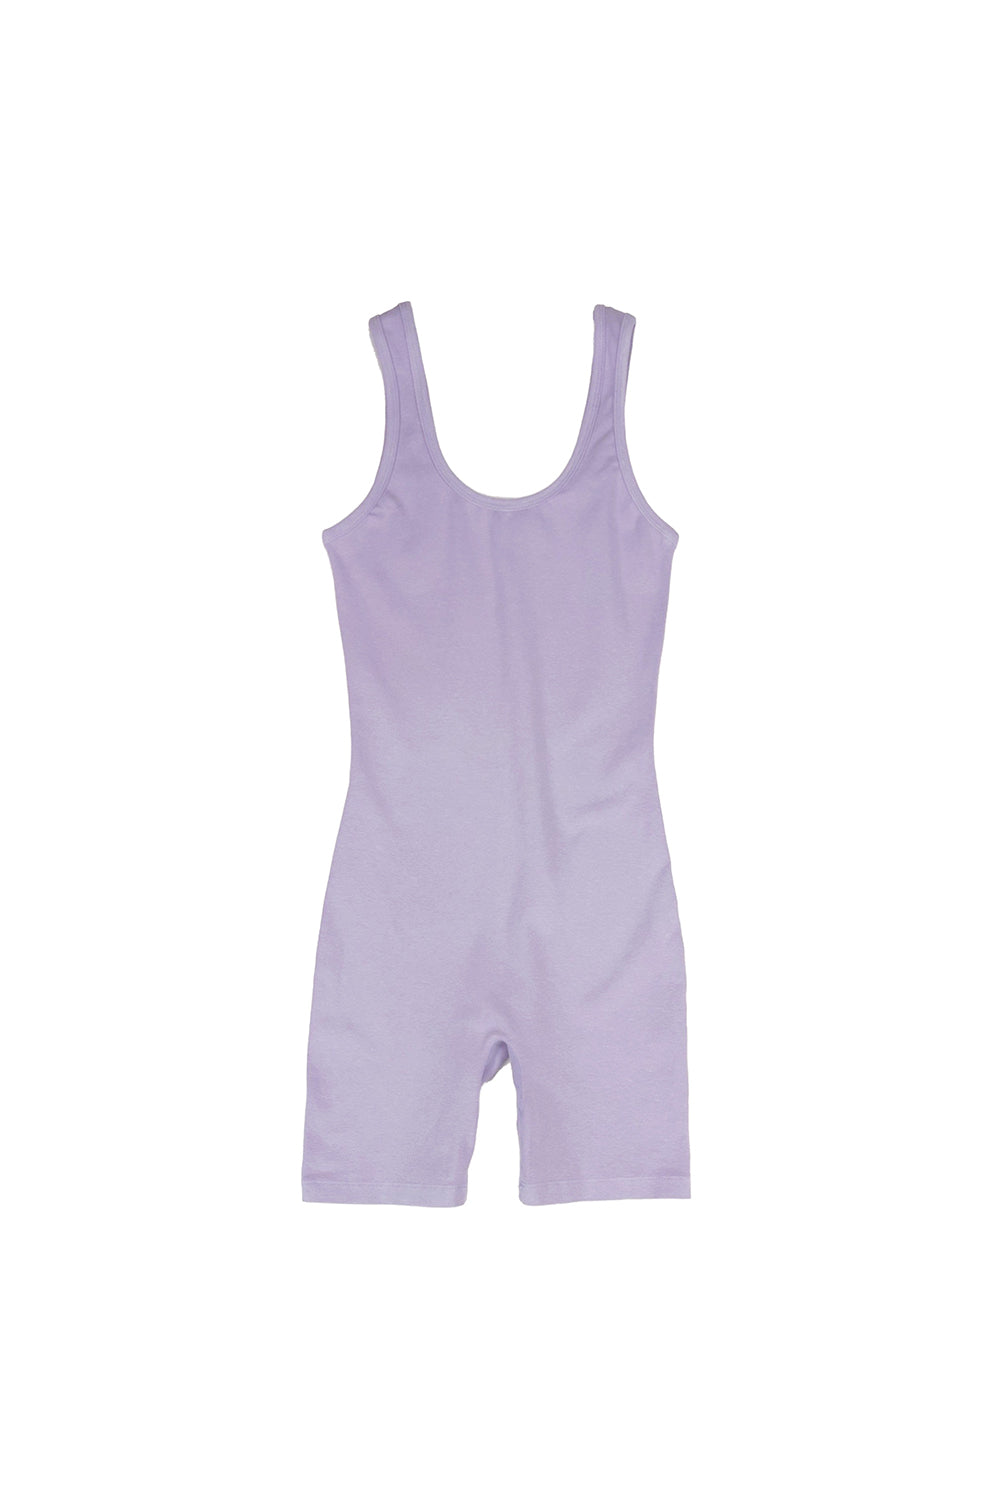 Singlet - Sale Colors | Jungmaven Hemp Clothing & Accessories / Color: Misty Lilac